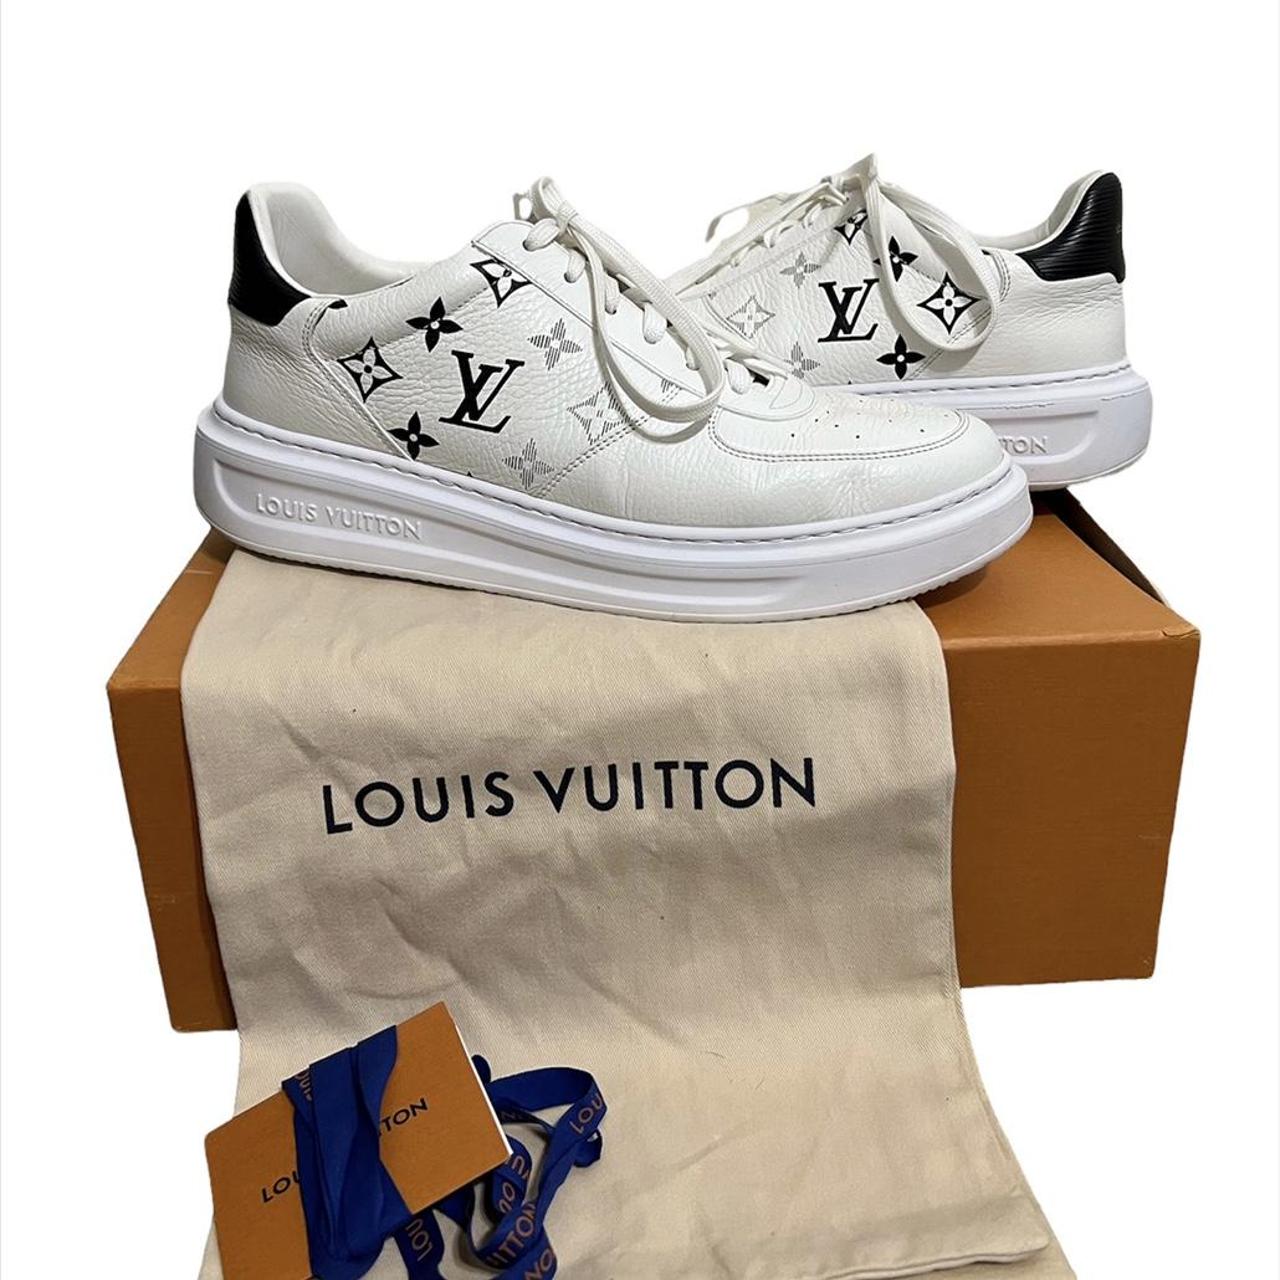 Louis Vuitton Beverly Hills Sneaker Reviewed